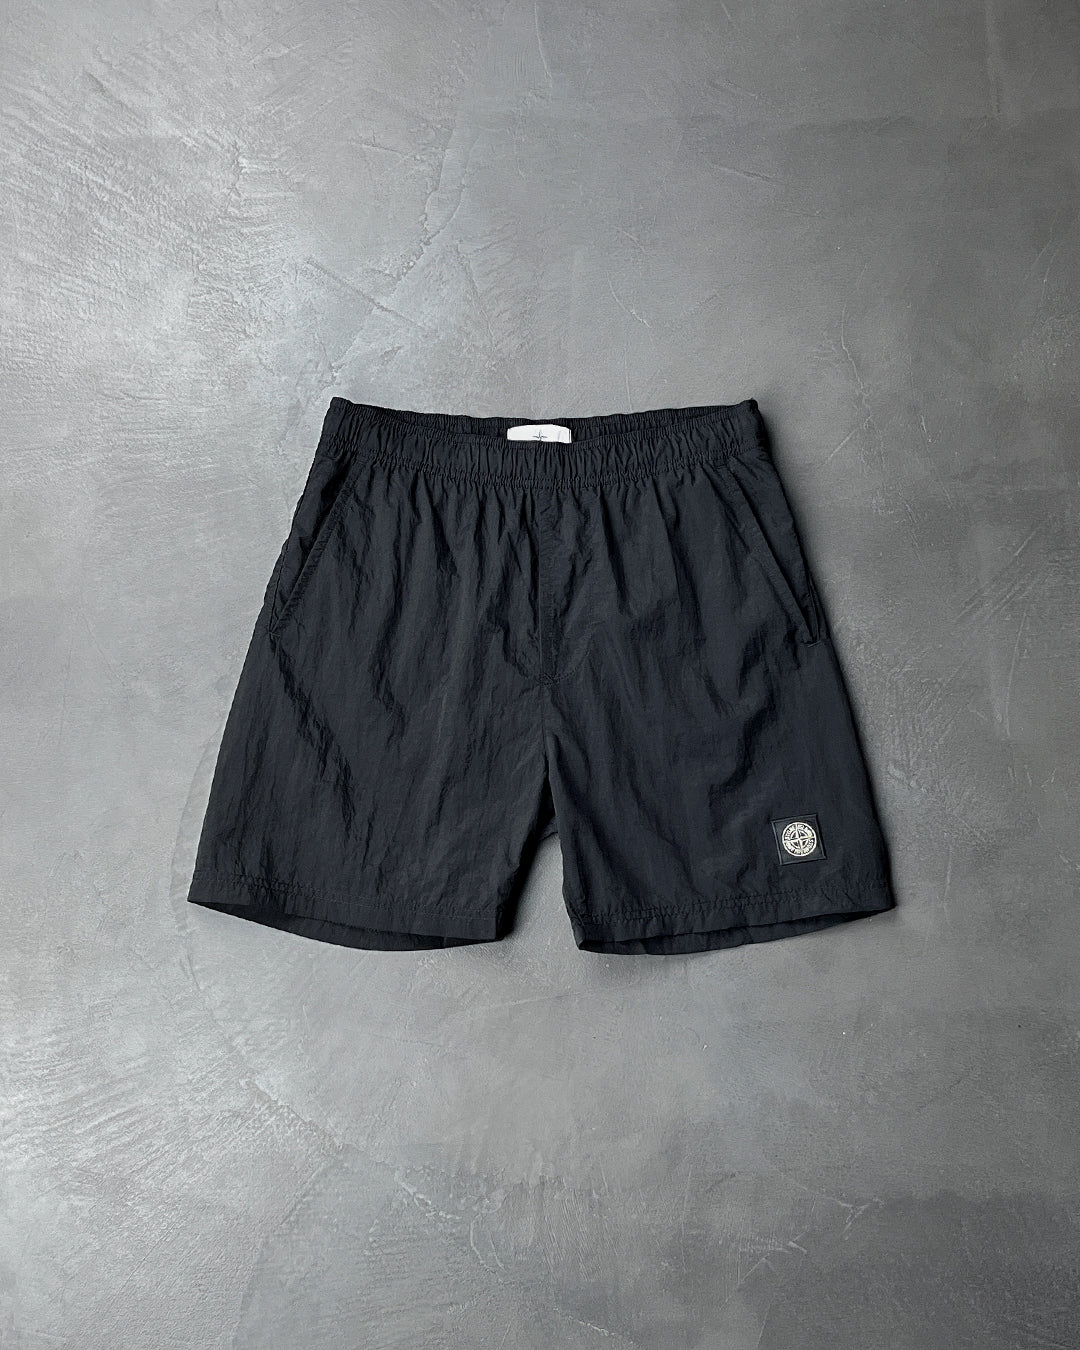 B0943 Beach Nylon Shorts Black SI0166-BK